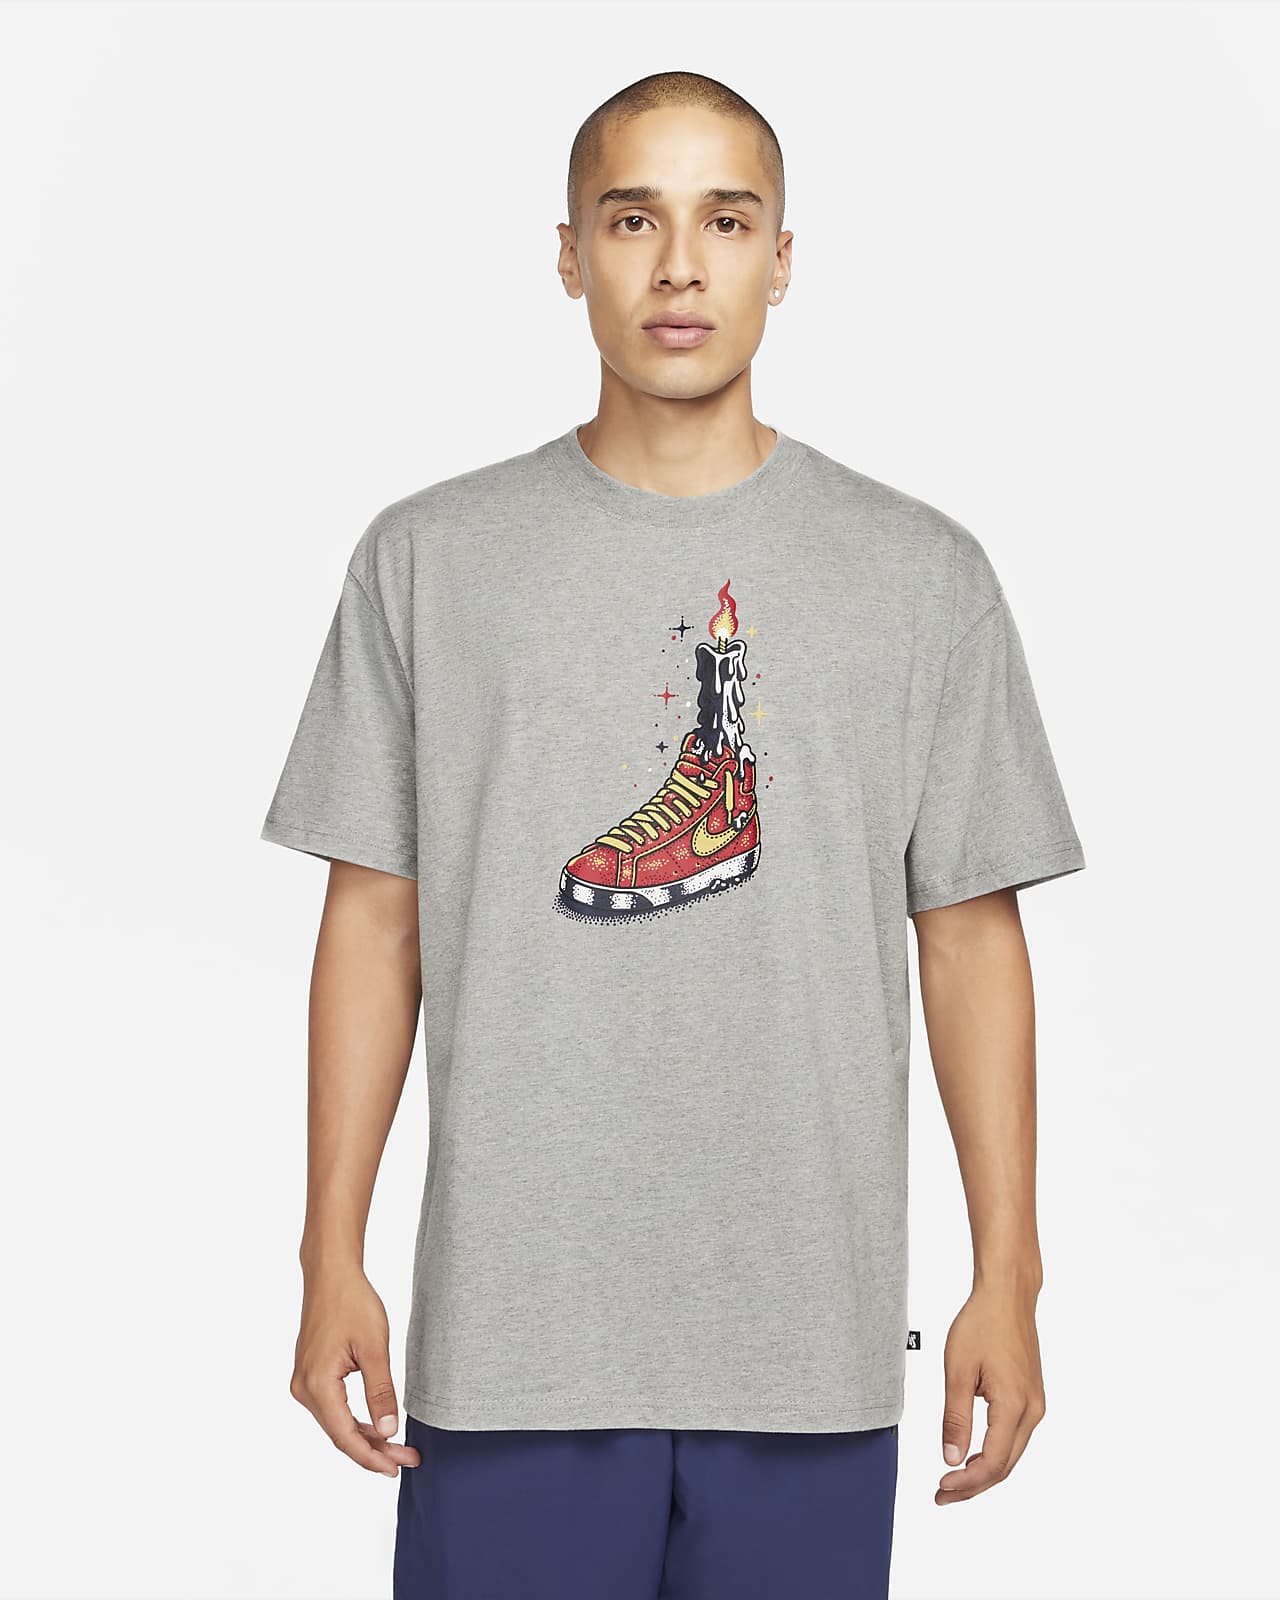 Nike SB Skate-T-Shirt